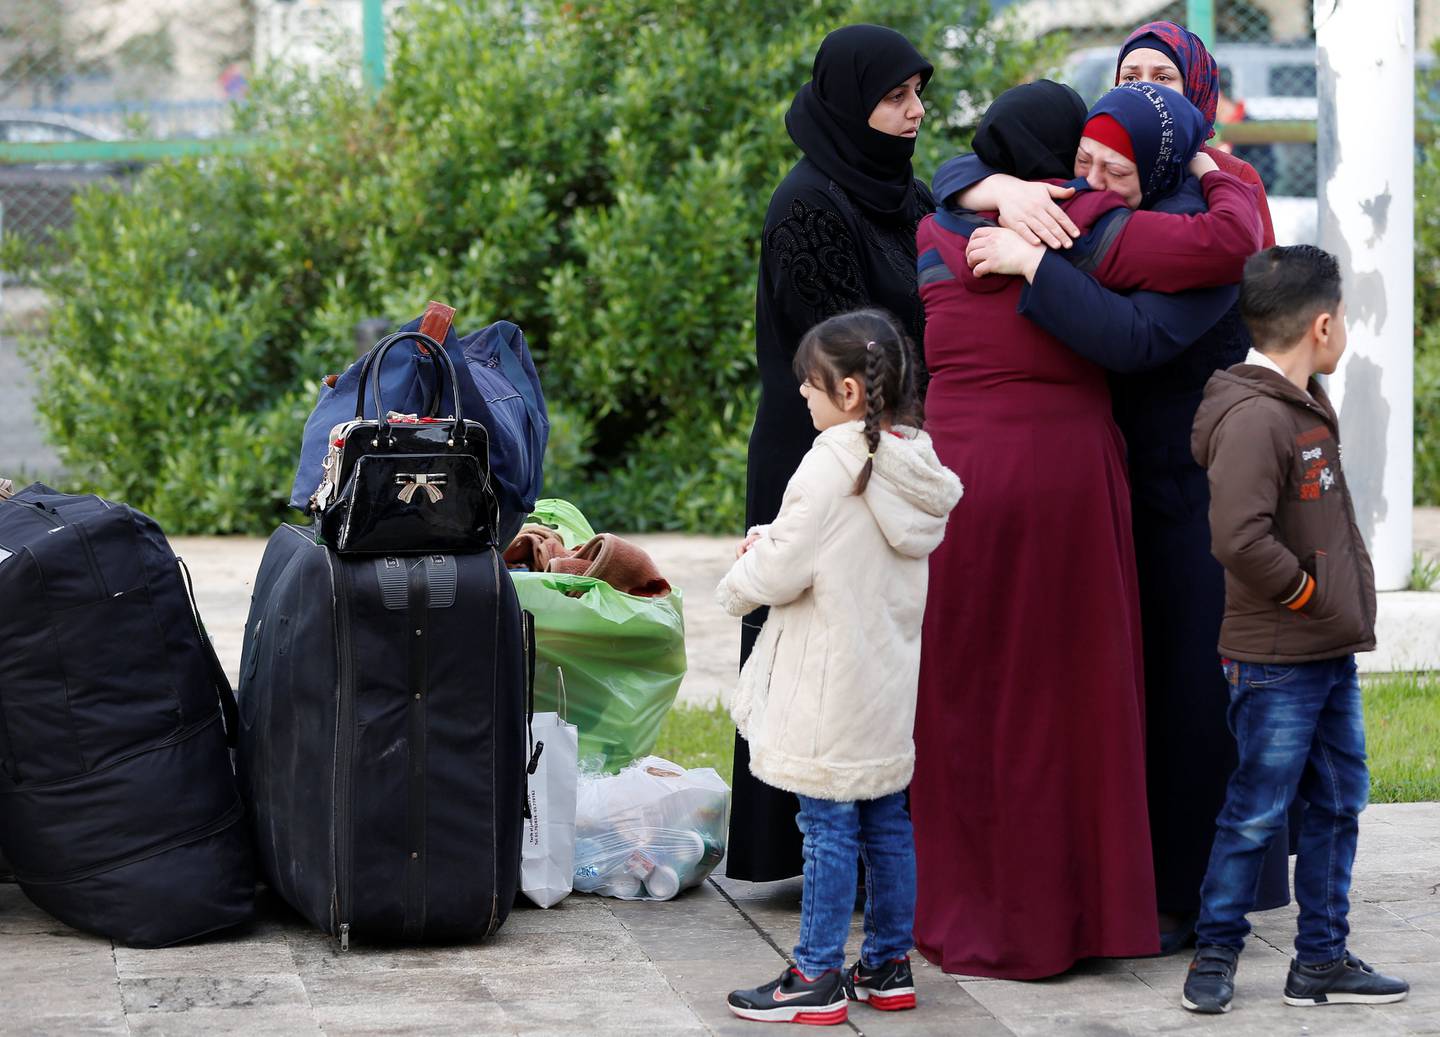 Une jeune fille réfugiée syrienne se tient près des bagages des réfugiés syriens rentrant en Syrie, à Beyrouth, au Liban, le 6 décembre 2018. Photo prise le 6 décembre 2018. REUTERS/Jamal Saidi